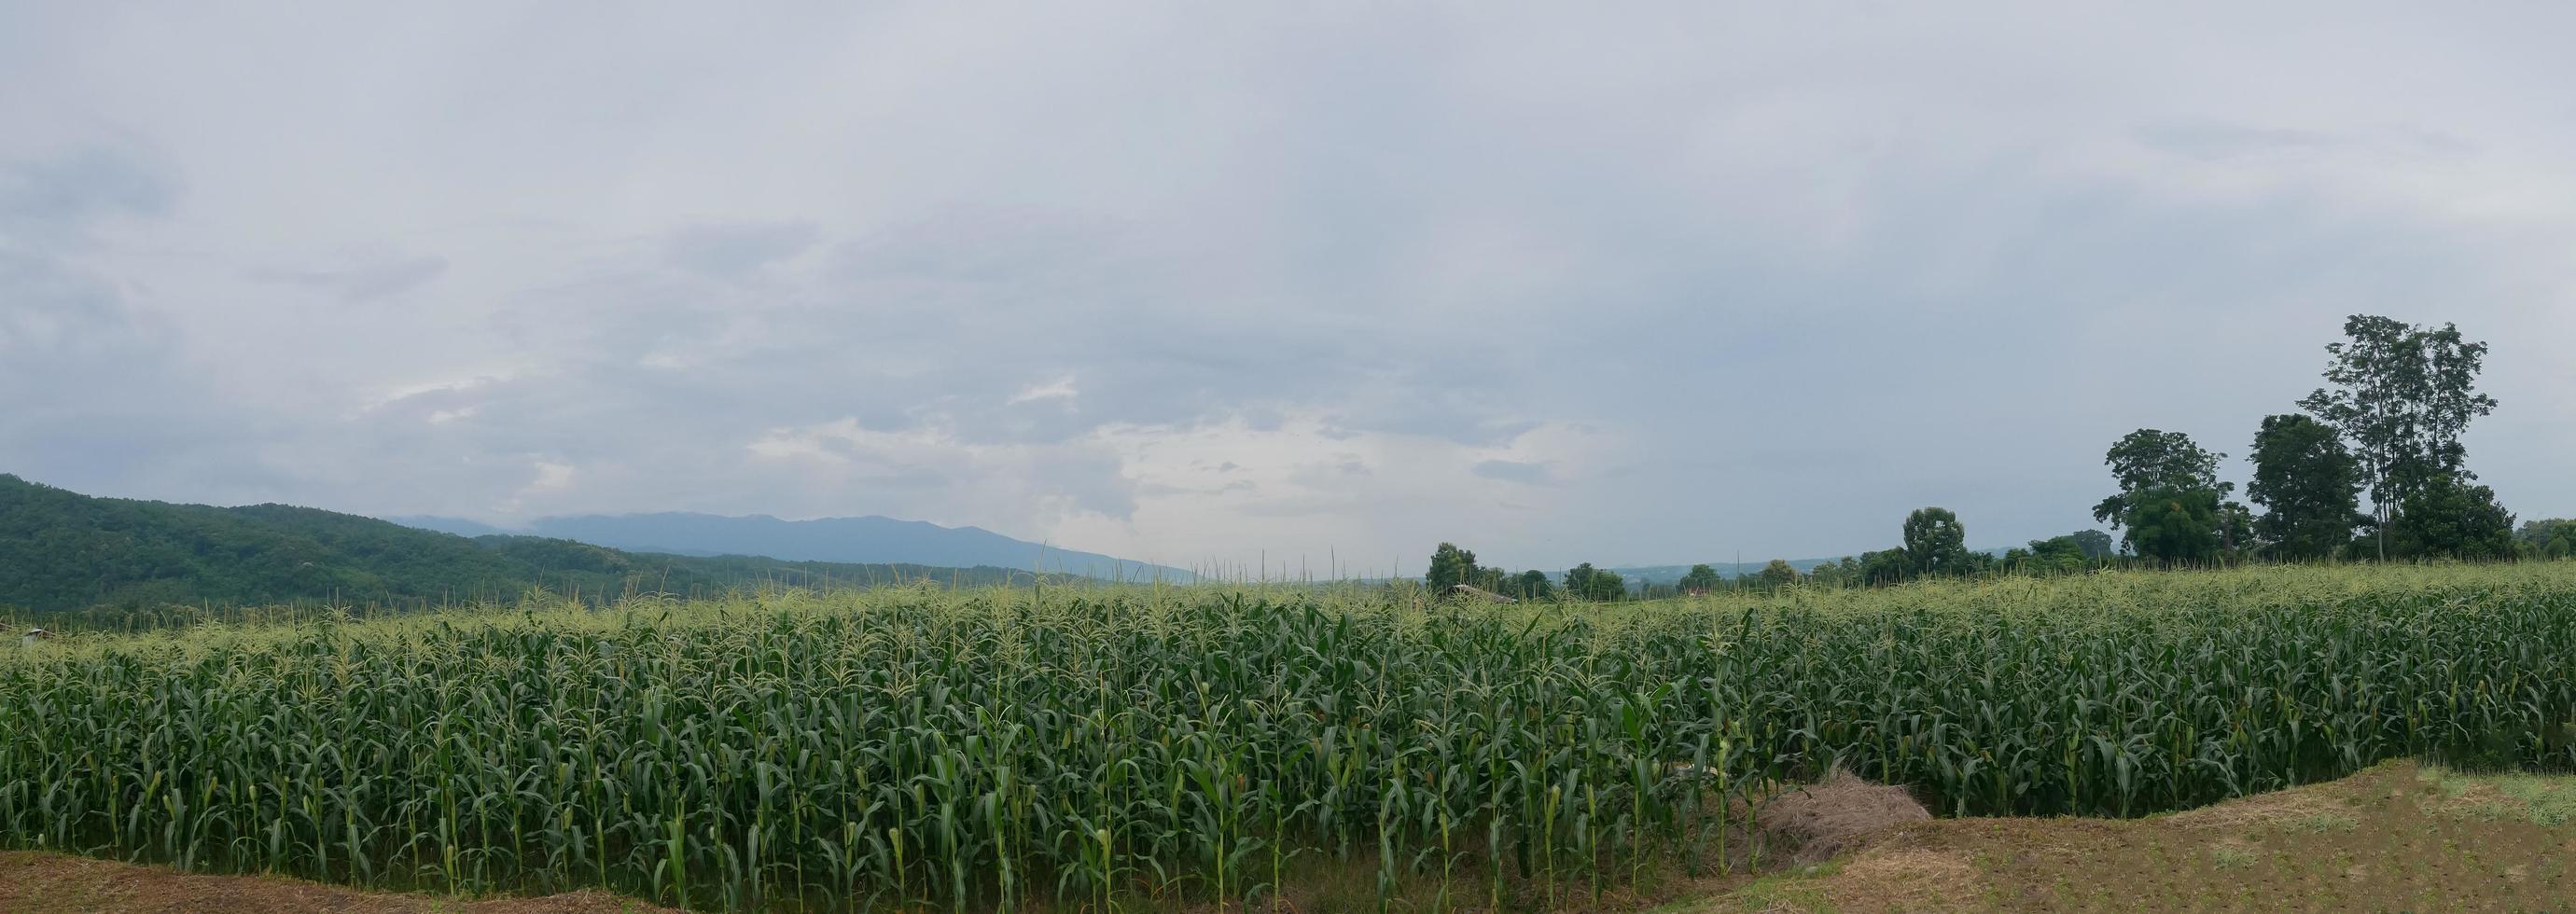 panorama campos de milho bela vista natural estação chuvosa foto